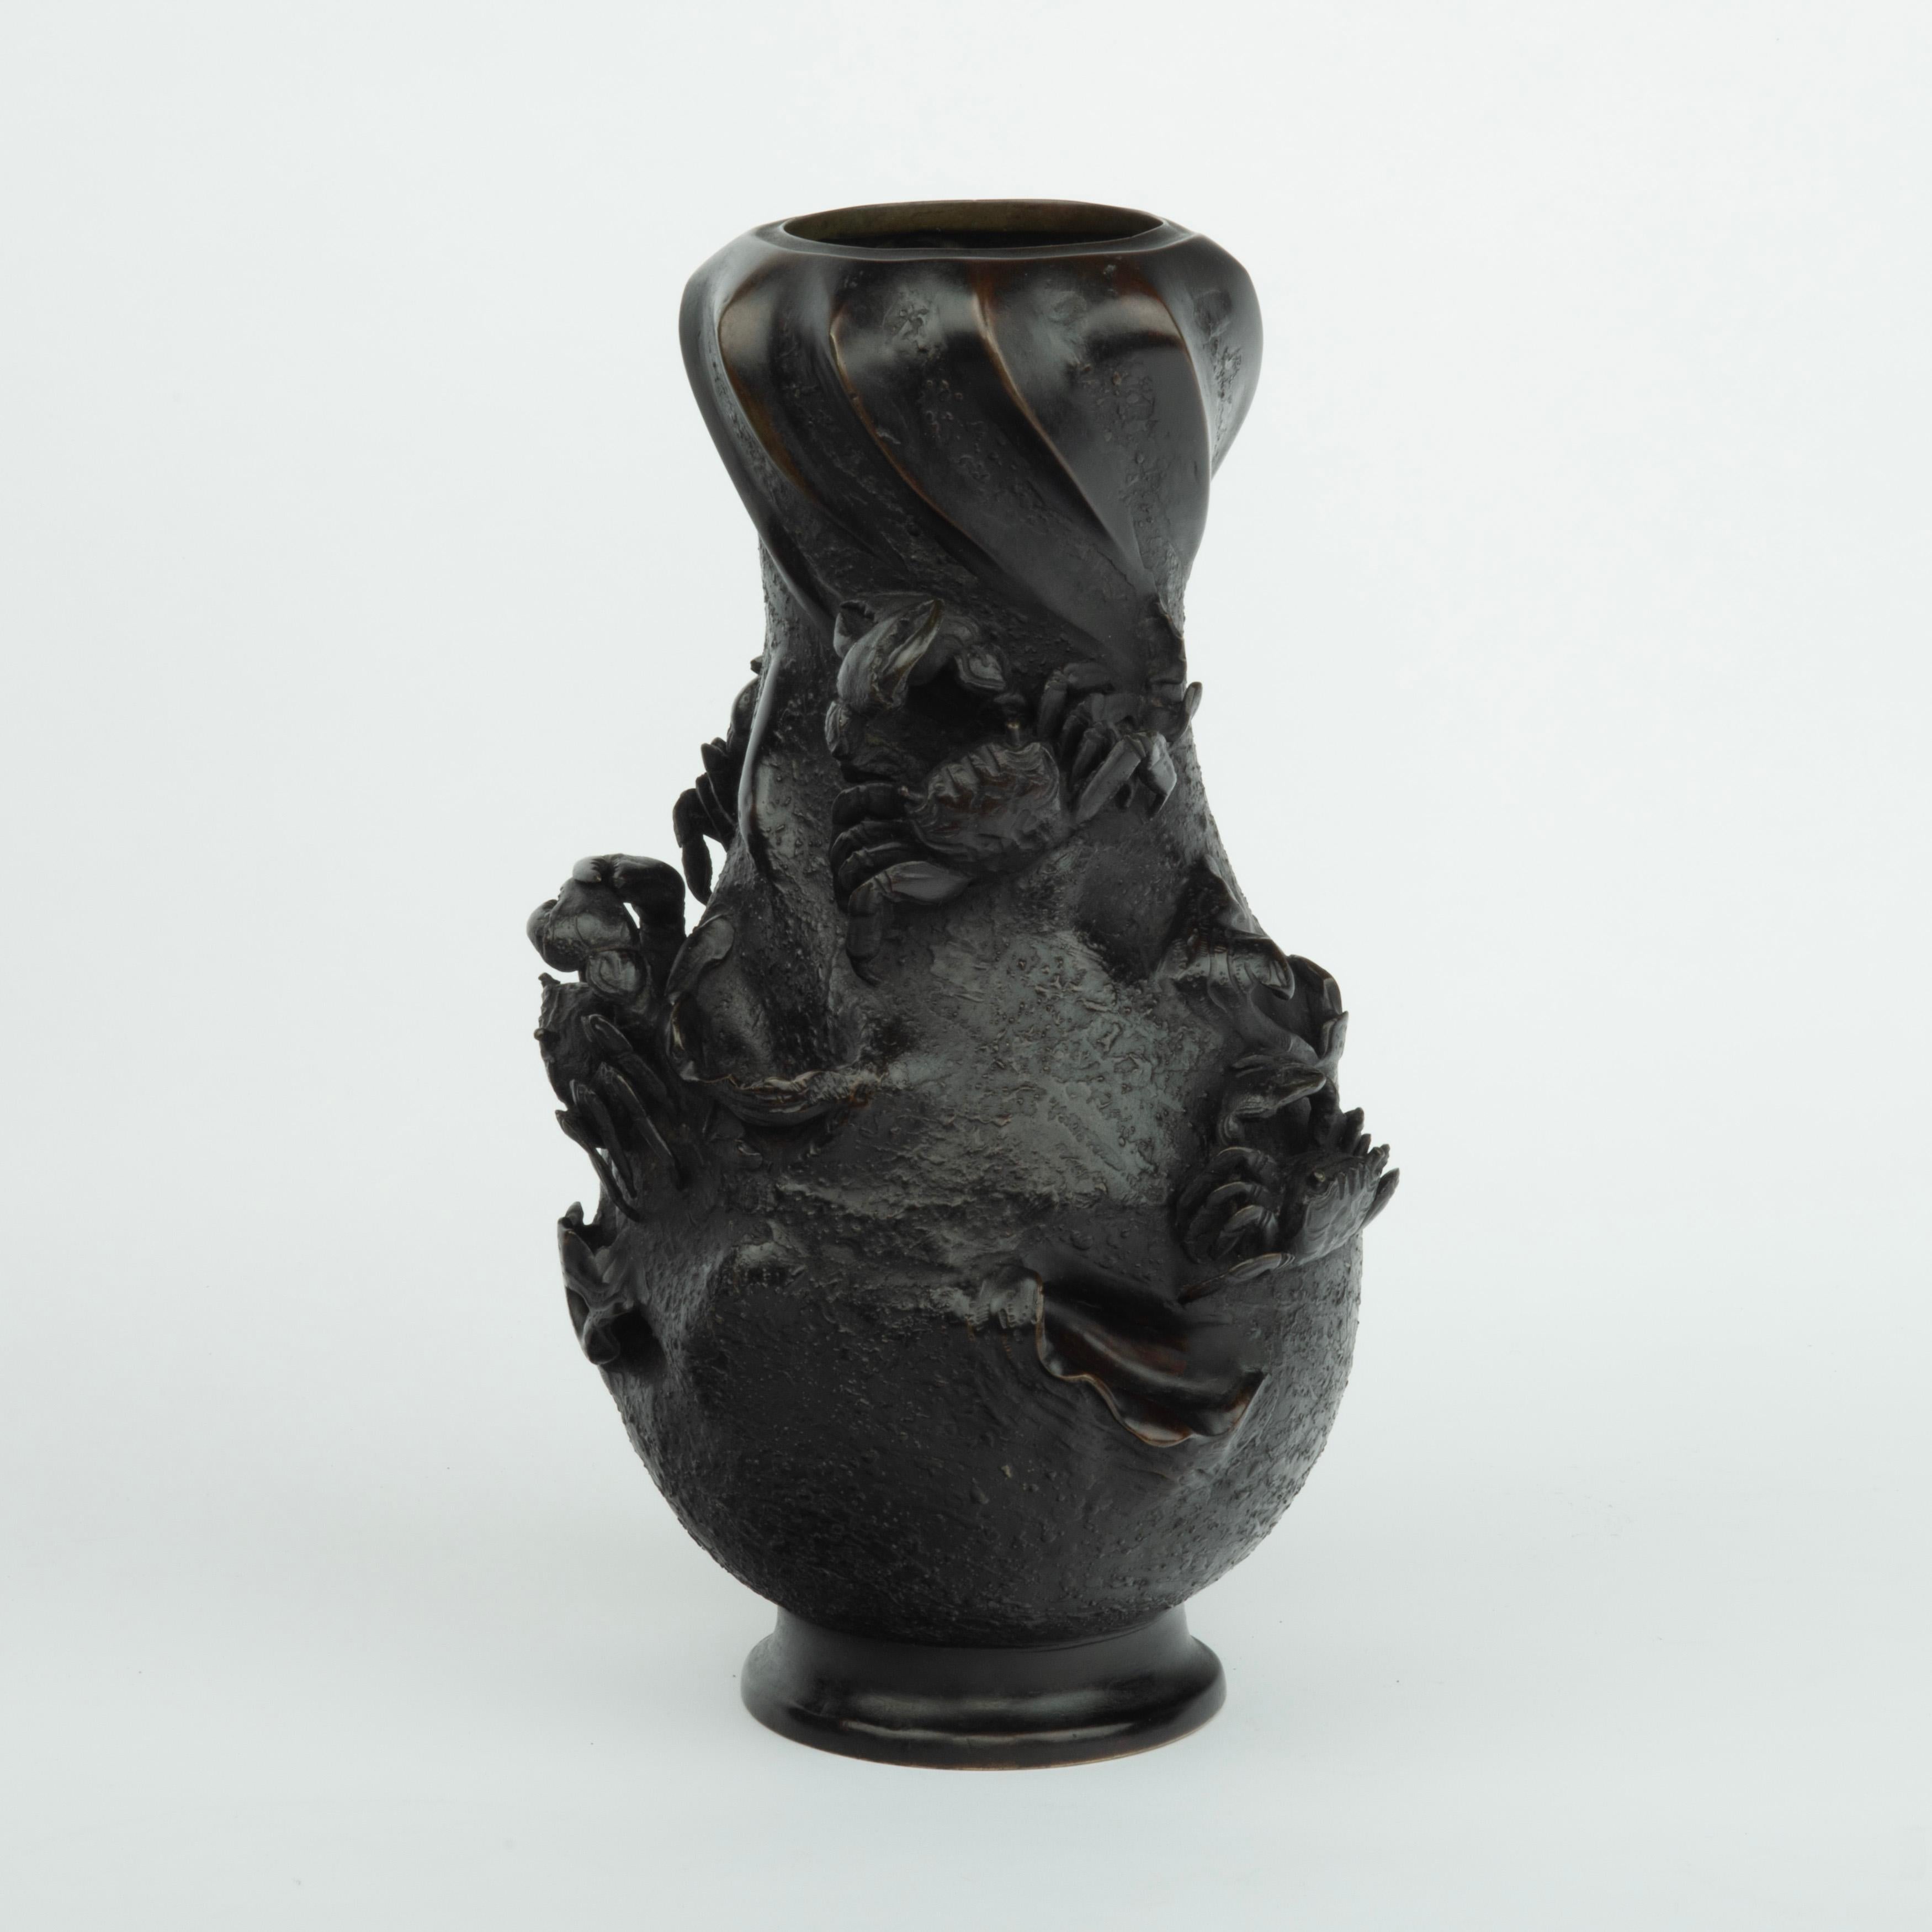 Vase en bronze Meiji par Nobuhira, de forme balustre avec un col torsadé en spirale, le corps décoré de quatre crabes en haut-relief et de plusieurs coquilles de palourdes ouvertes partiellement exposées sur un fond texturé.  Estampillé 